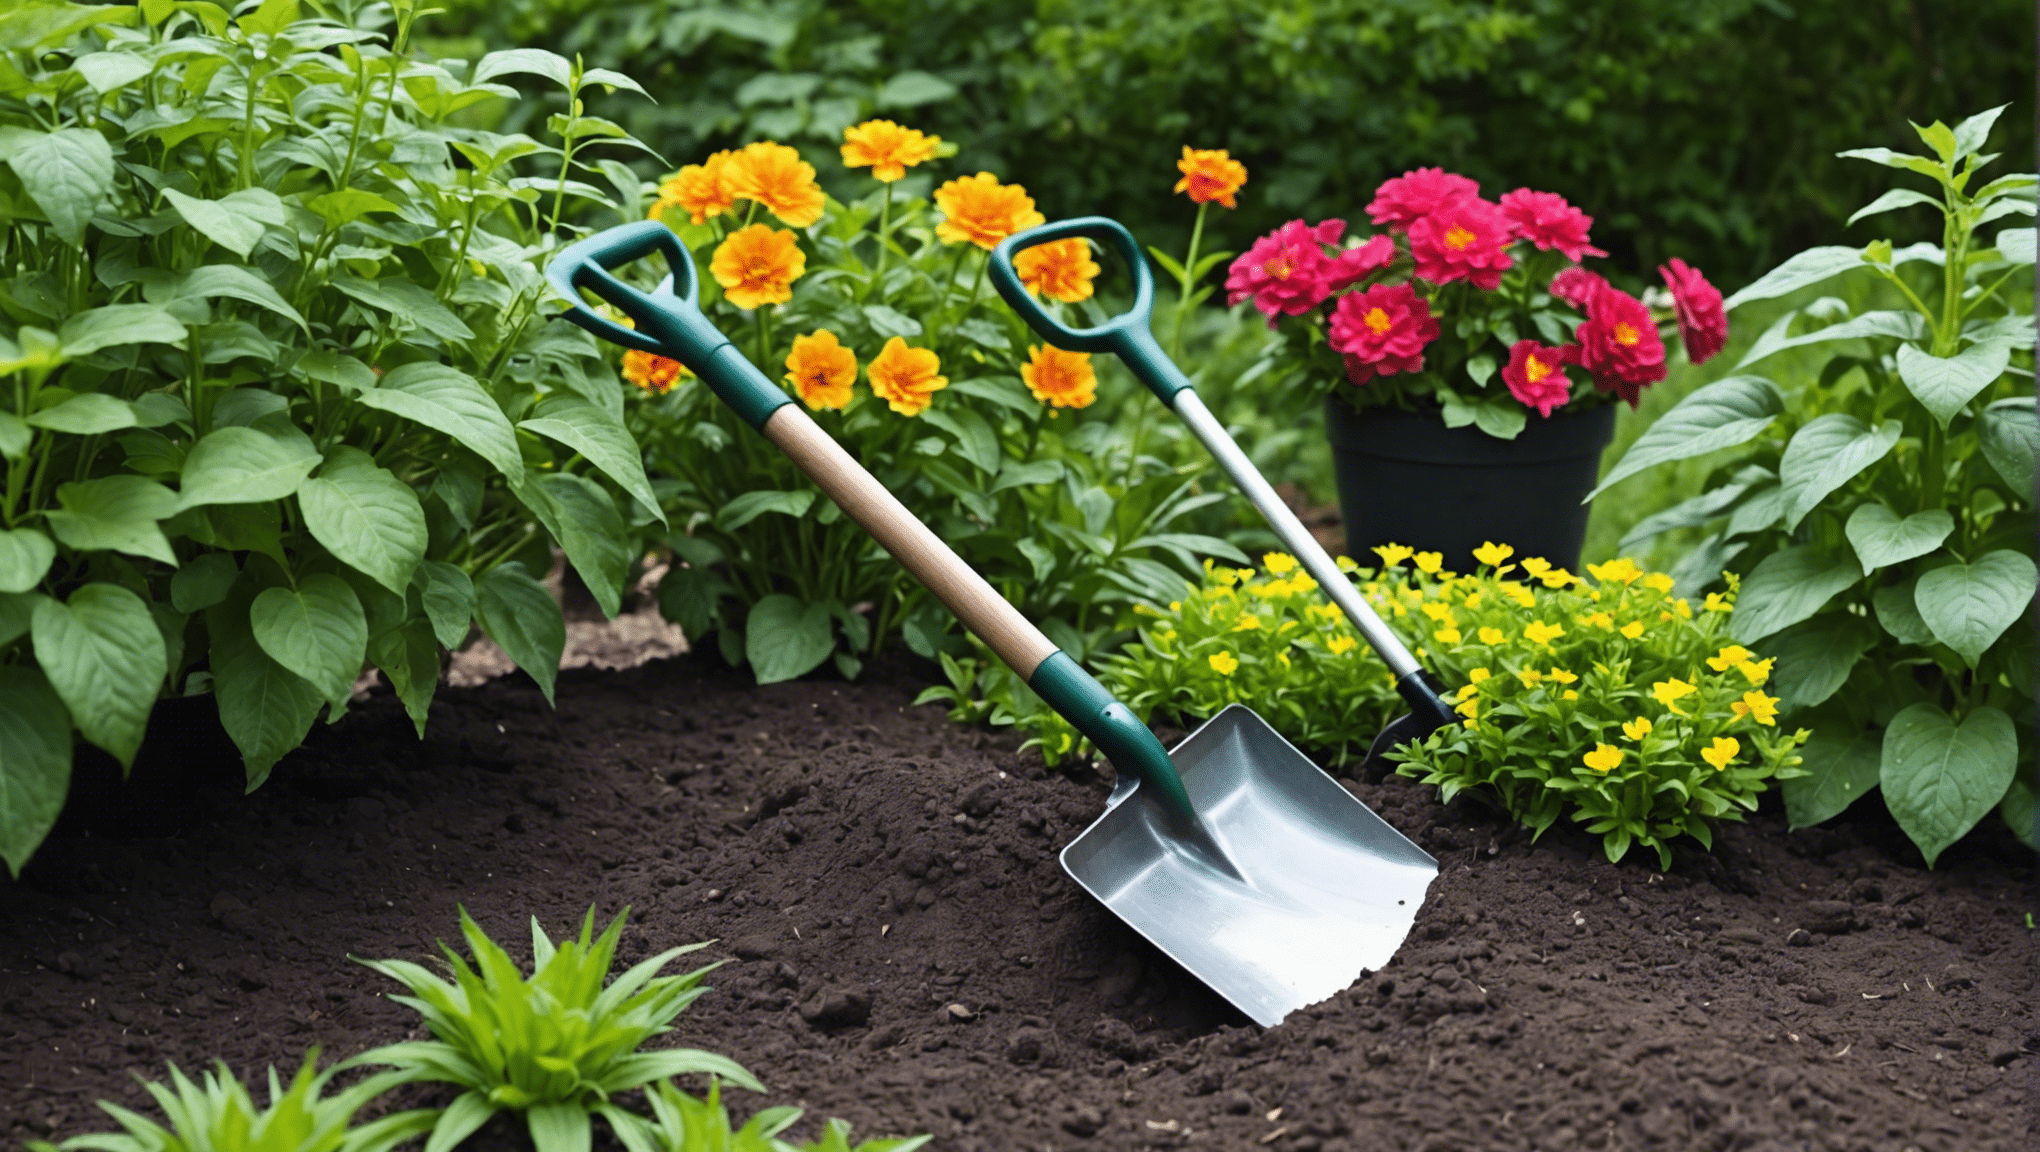 nájdite ideálnu malú záhradnú lopatku pre všetky vaše záhradnícke potreby s naším výberom vysokokvalitného a odolného náradia.